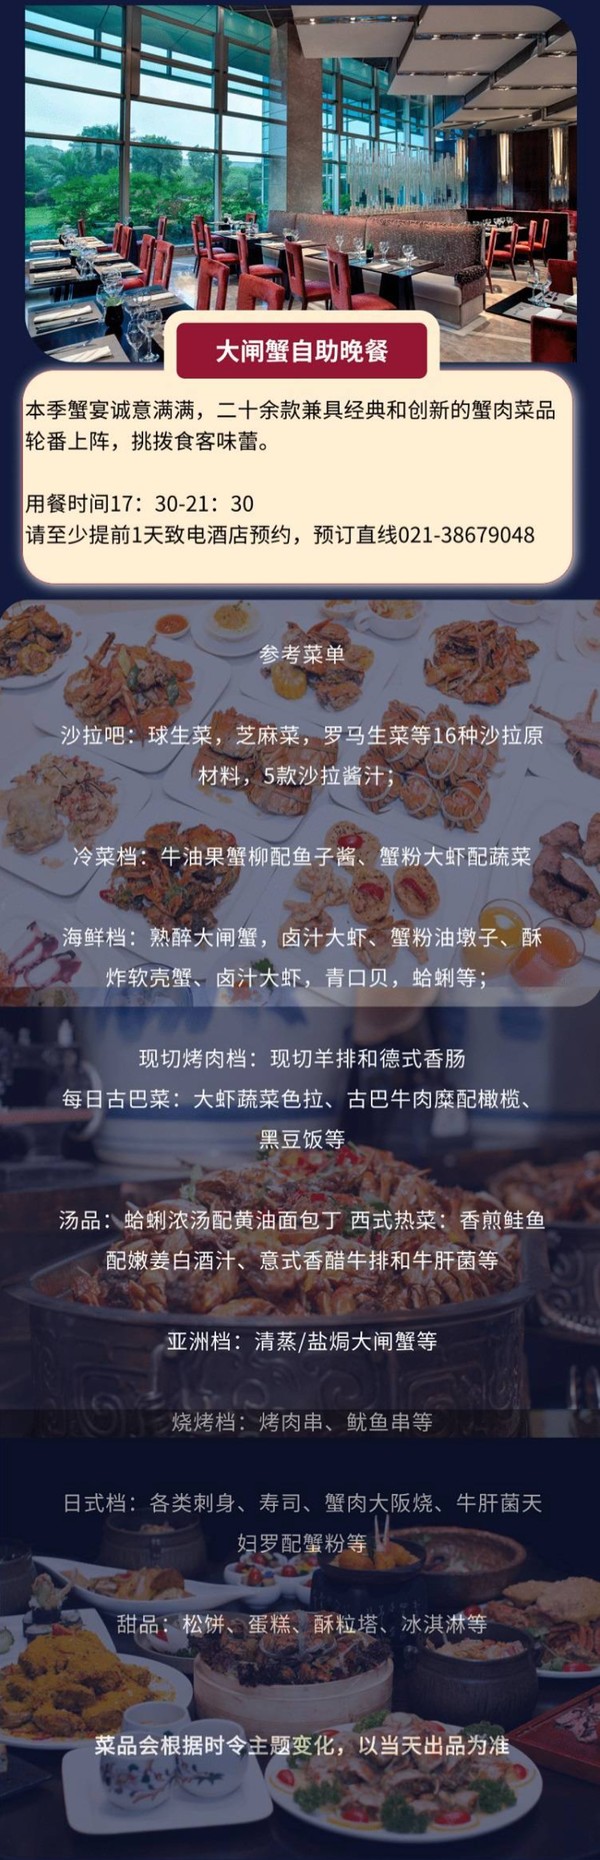 大闸蟹畅吃！蟹肉菜品轮番上阵！上海凯宾斯基大酒店大闸蟹自助晚餐